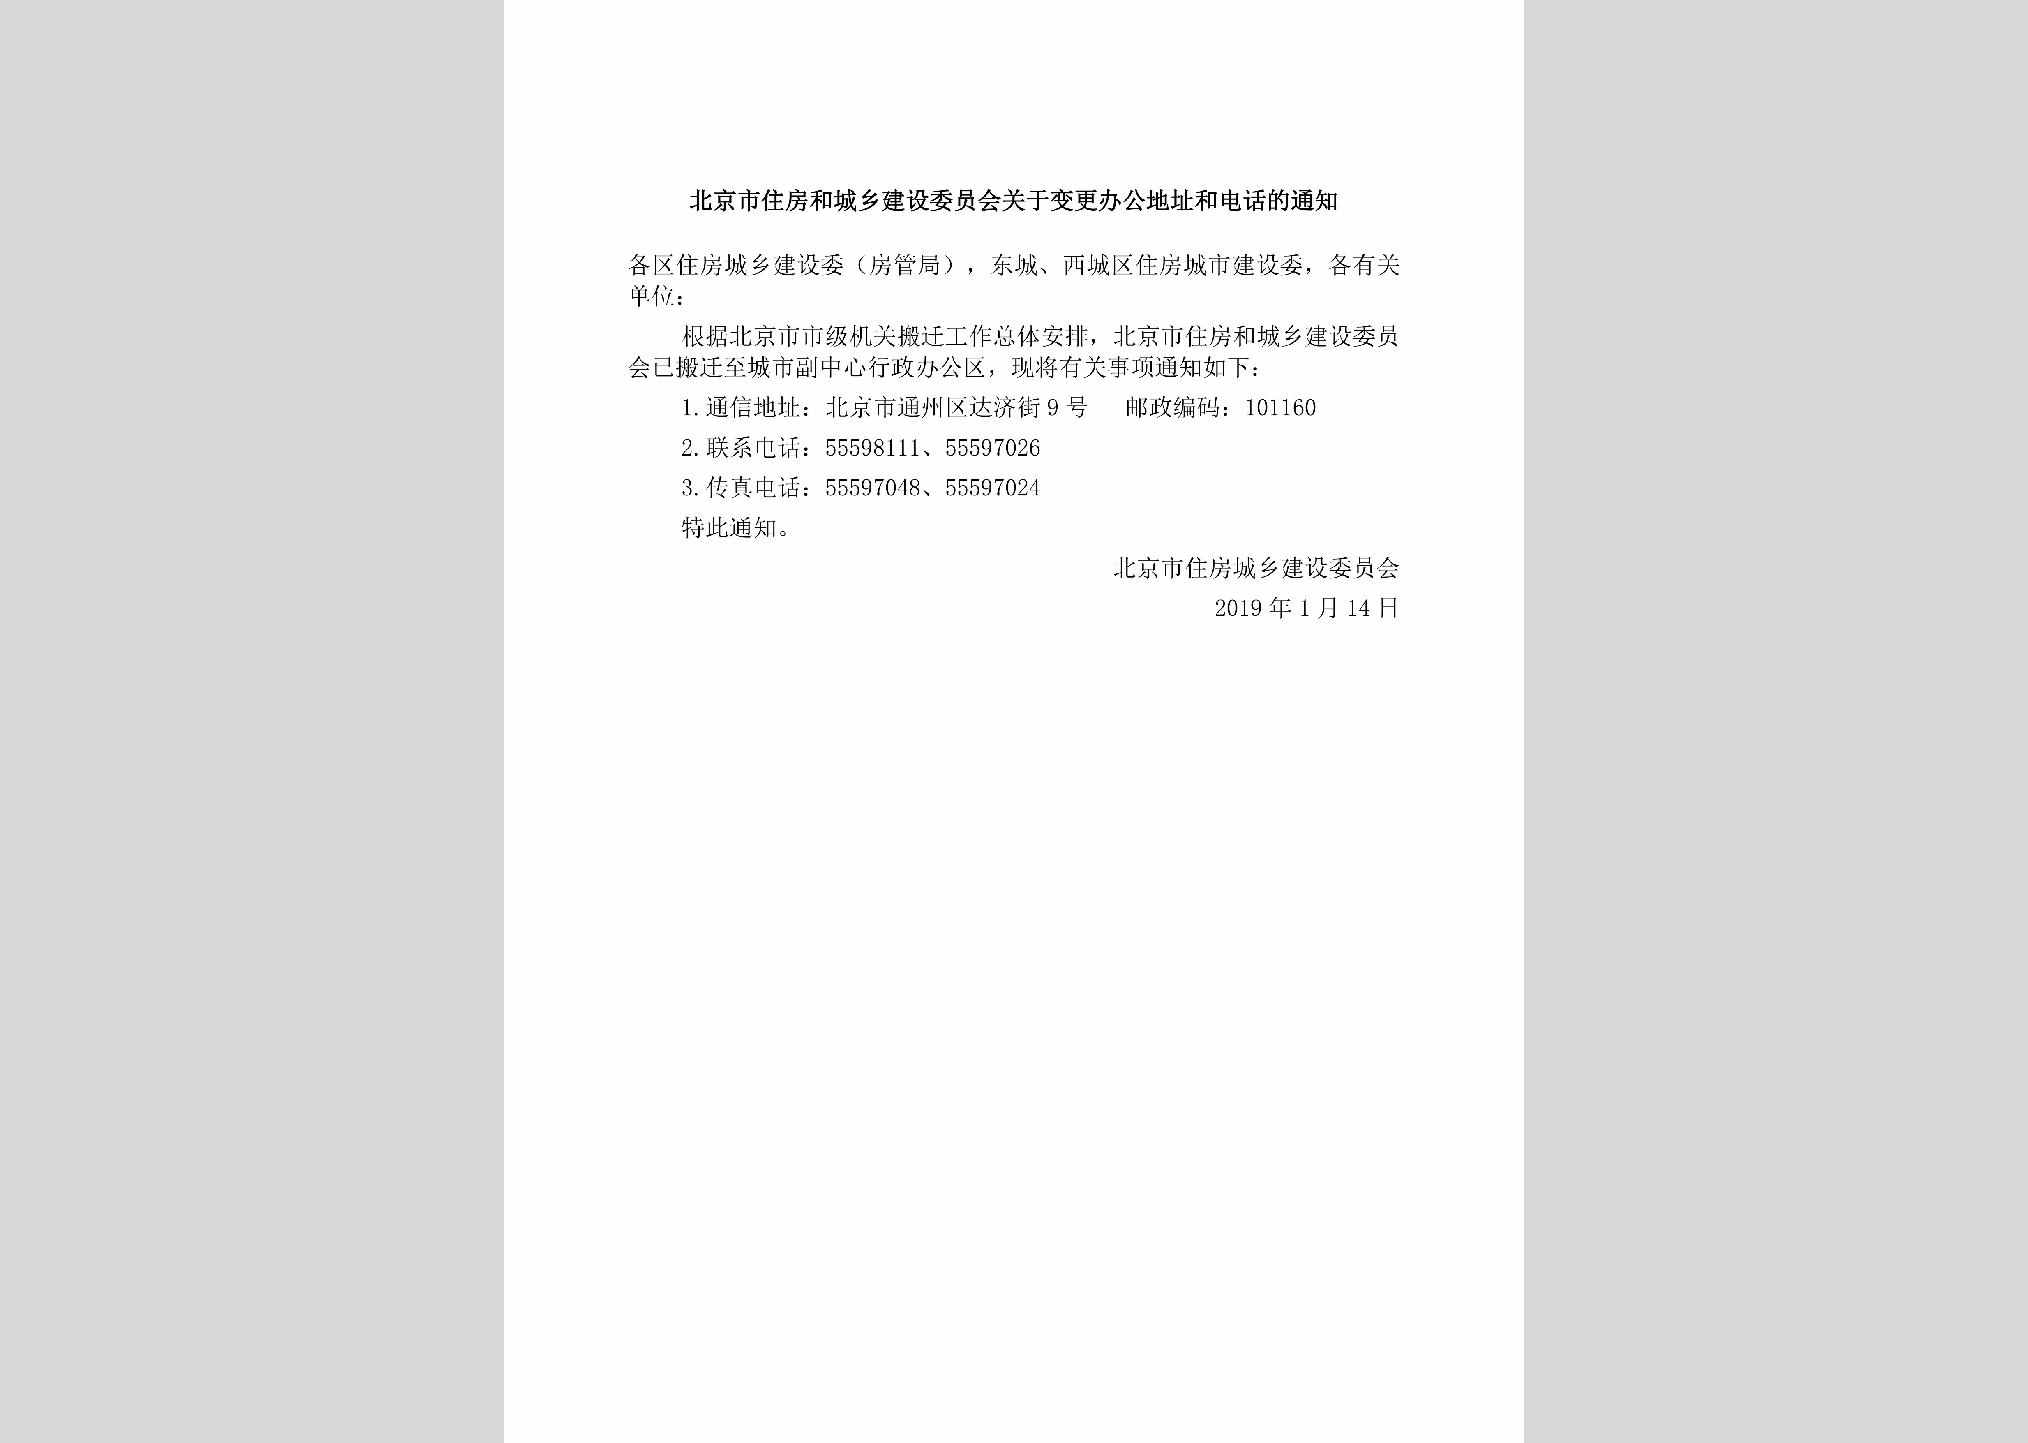 BJ-GYBGBGDZ-2019：北京市住房和城乡建设委员会关于变更办公地址和电话的通知